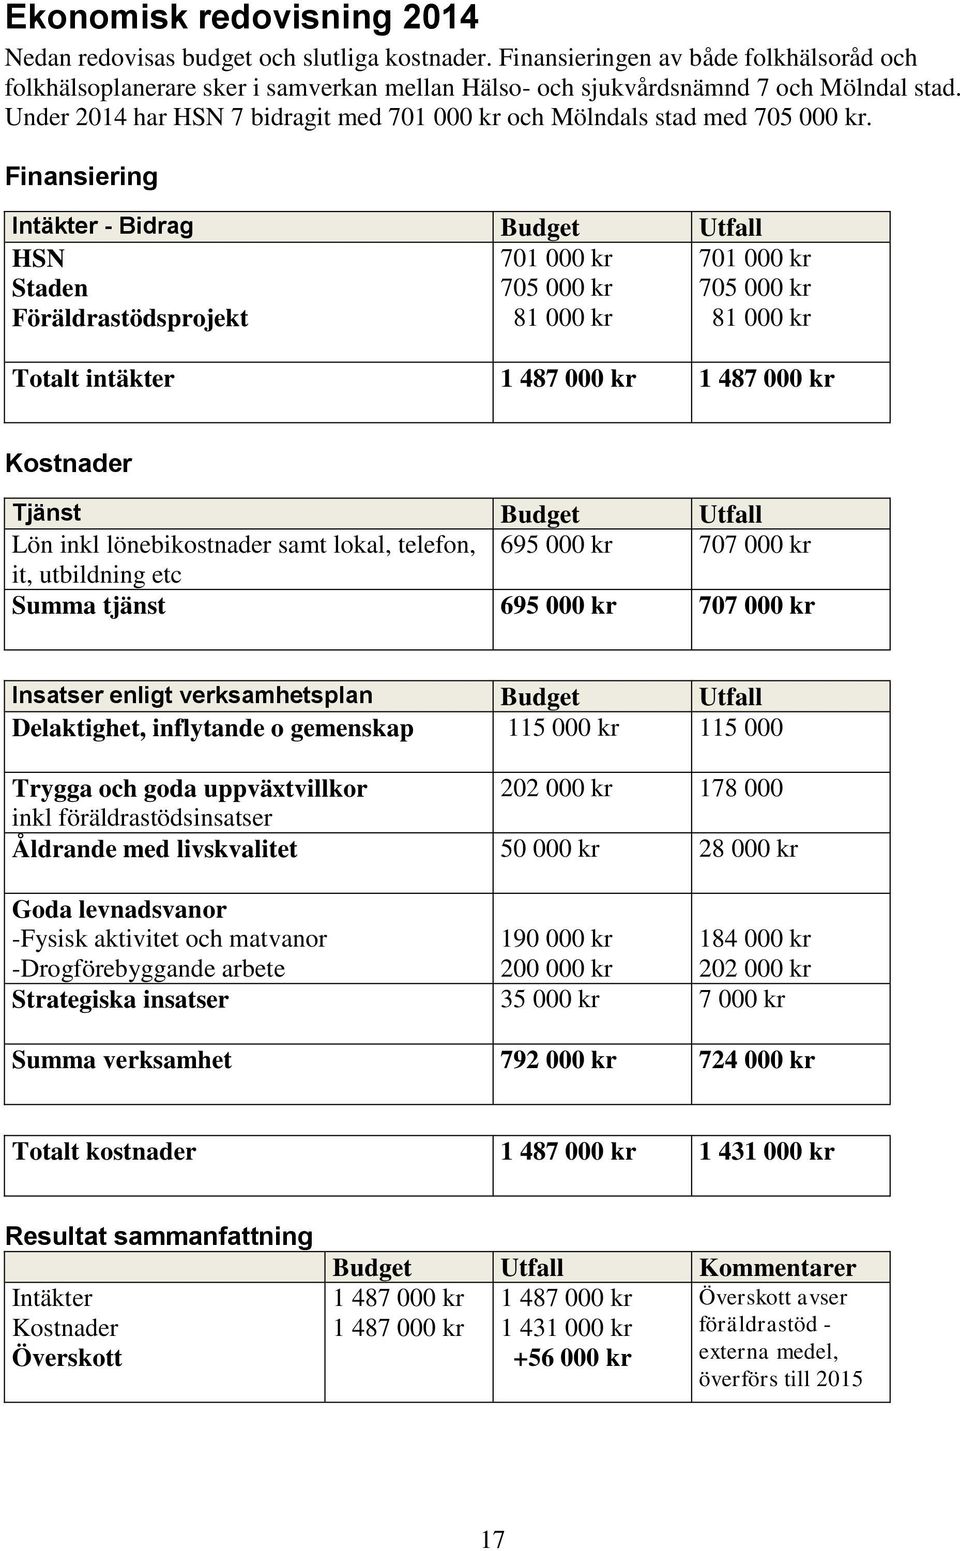 Under 2014 har HSN 7 bidragit med 701 000 kr och Mölndals stad med 705 000 kr.